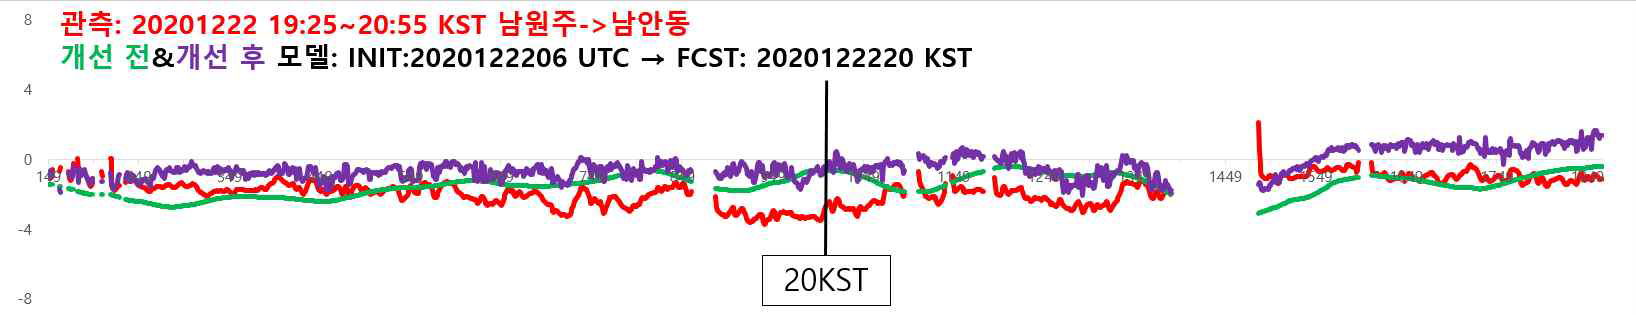 개선 전(초록색), 후(보라색)의 노면온도재현모델 결과와 관측(붉은색) 노면온도 시계열, 노면온도재현모델은 2020.12.22.06:00(2020.12.22.15:00KST)UTC를 초기 시간으로 하여서 5시간 후를 재현한 20:00KST의 결과이며, 관측은 2020.12.22.19:25 ~ 20:55 KST 사이의 실측 결과임. 터널 구간은 missing value 처리하였음. y축은 노면온도(℃), x축은 테스트 구간의 지점임